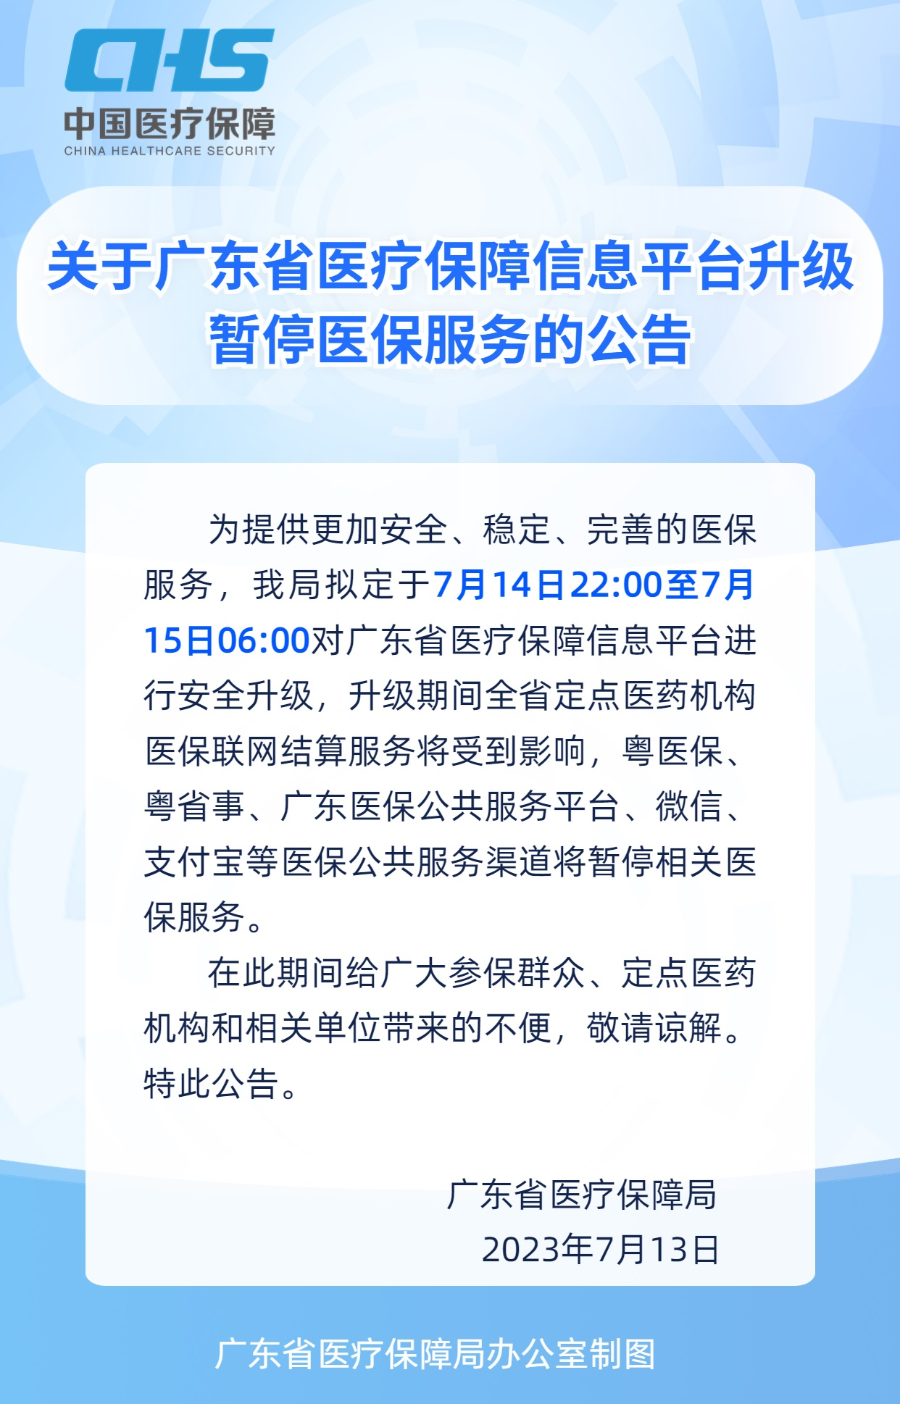 关于广东省医疗保障信息平台升级暂停医保服务的公告.jpg